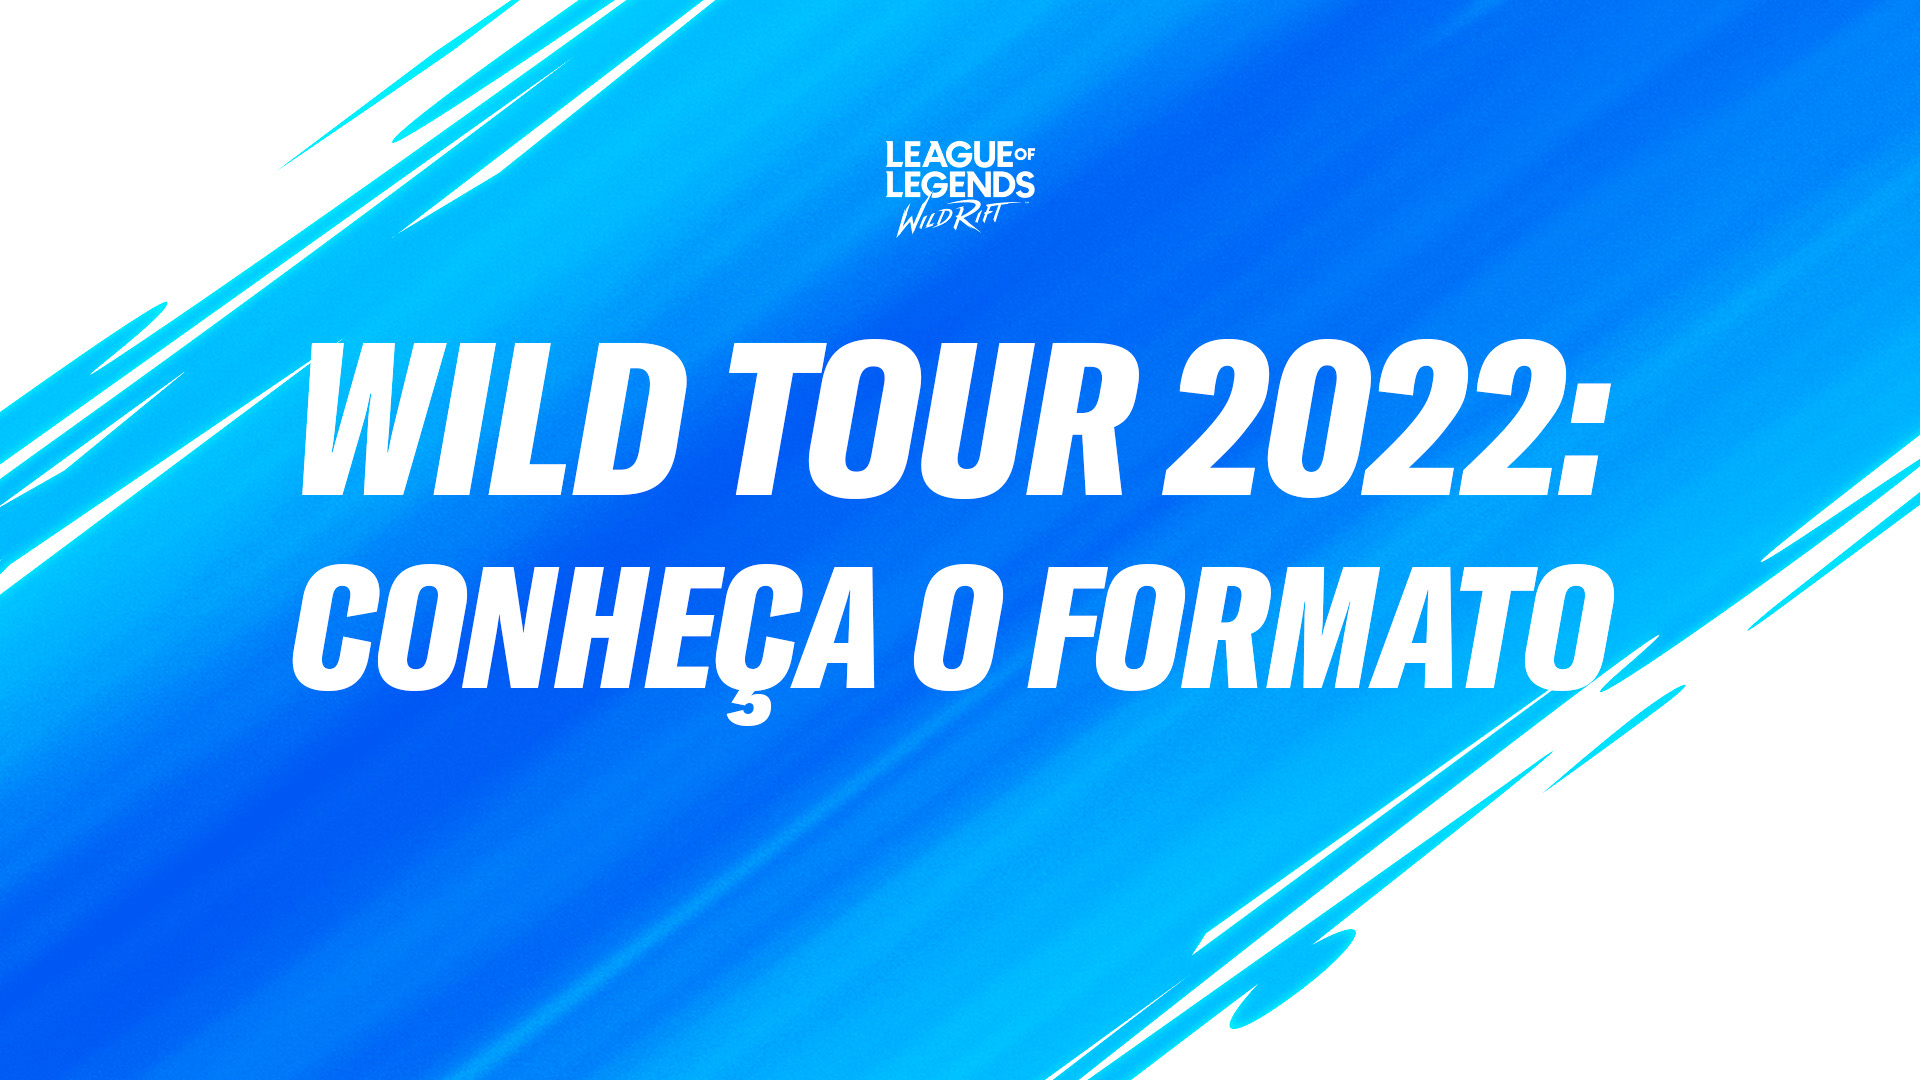 Wild Tour Brasil 2022: formato, calendário e todos os detalhes